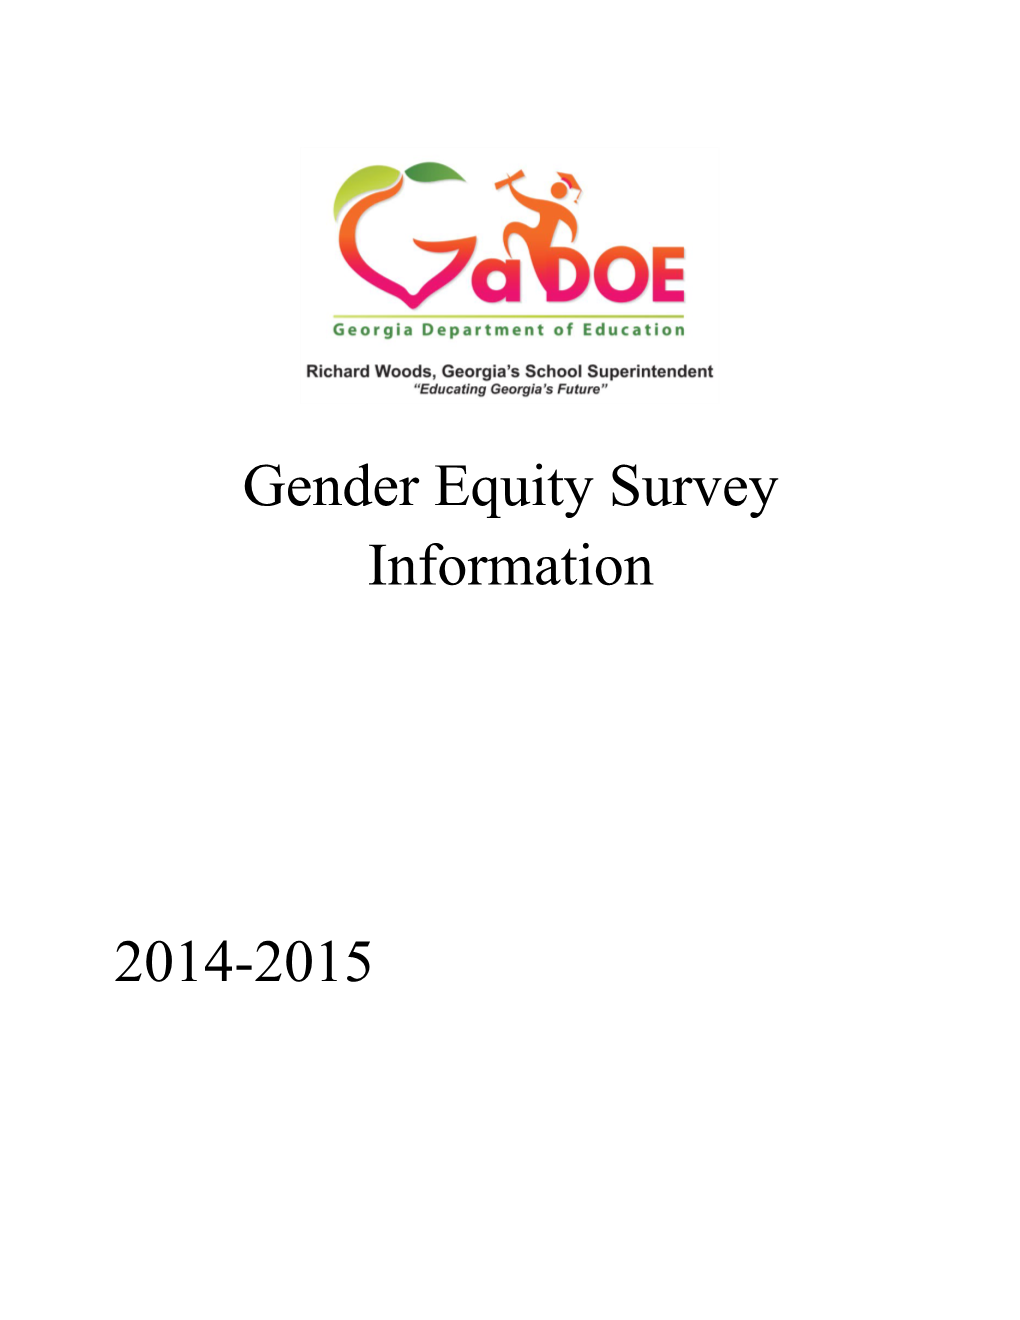 Gender Equity Survey Information